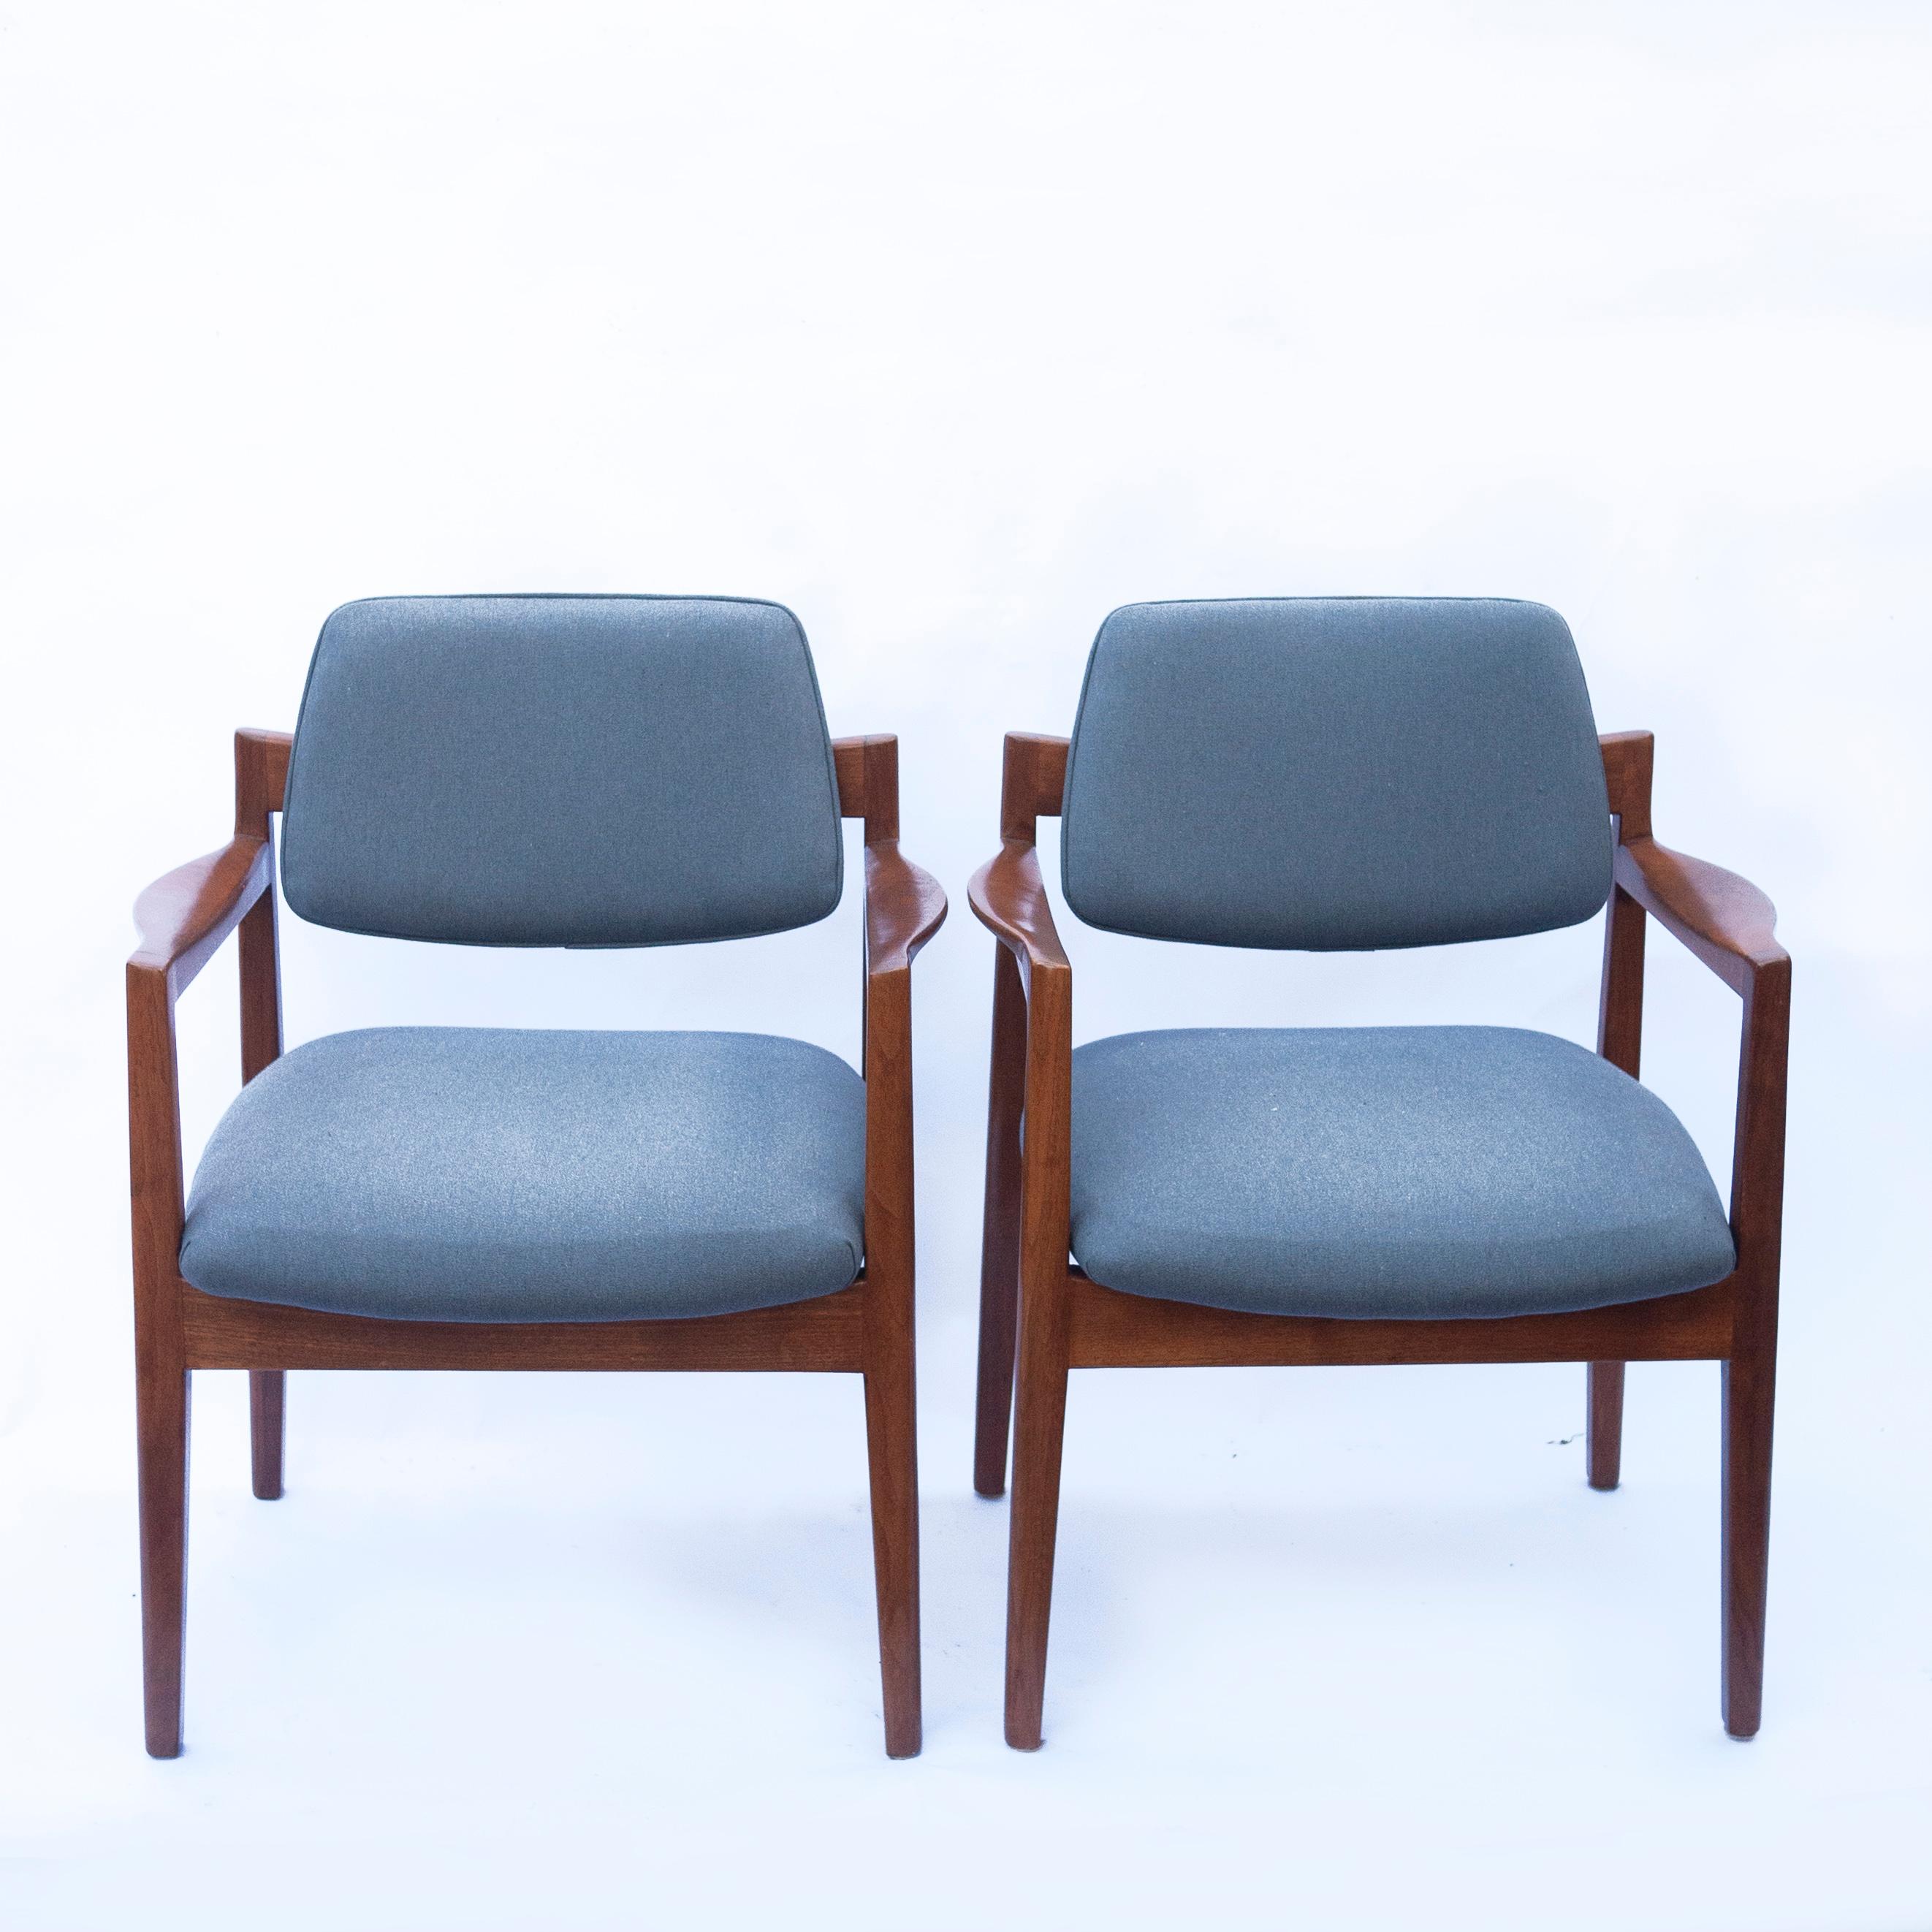 Une paire de fauteuils Jens Risom en tissu bleu nouvellement tapissé. Le cadre est en noyer.

Fabricant - Knoll

Designer - Jens Risom

Période de conception - 1960 à 1969

Style - Vintage, midcentury

État détaillé - Bon

Restauration